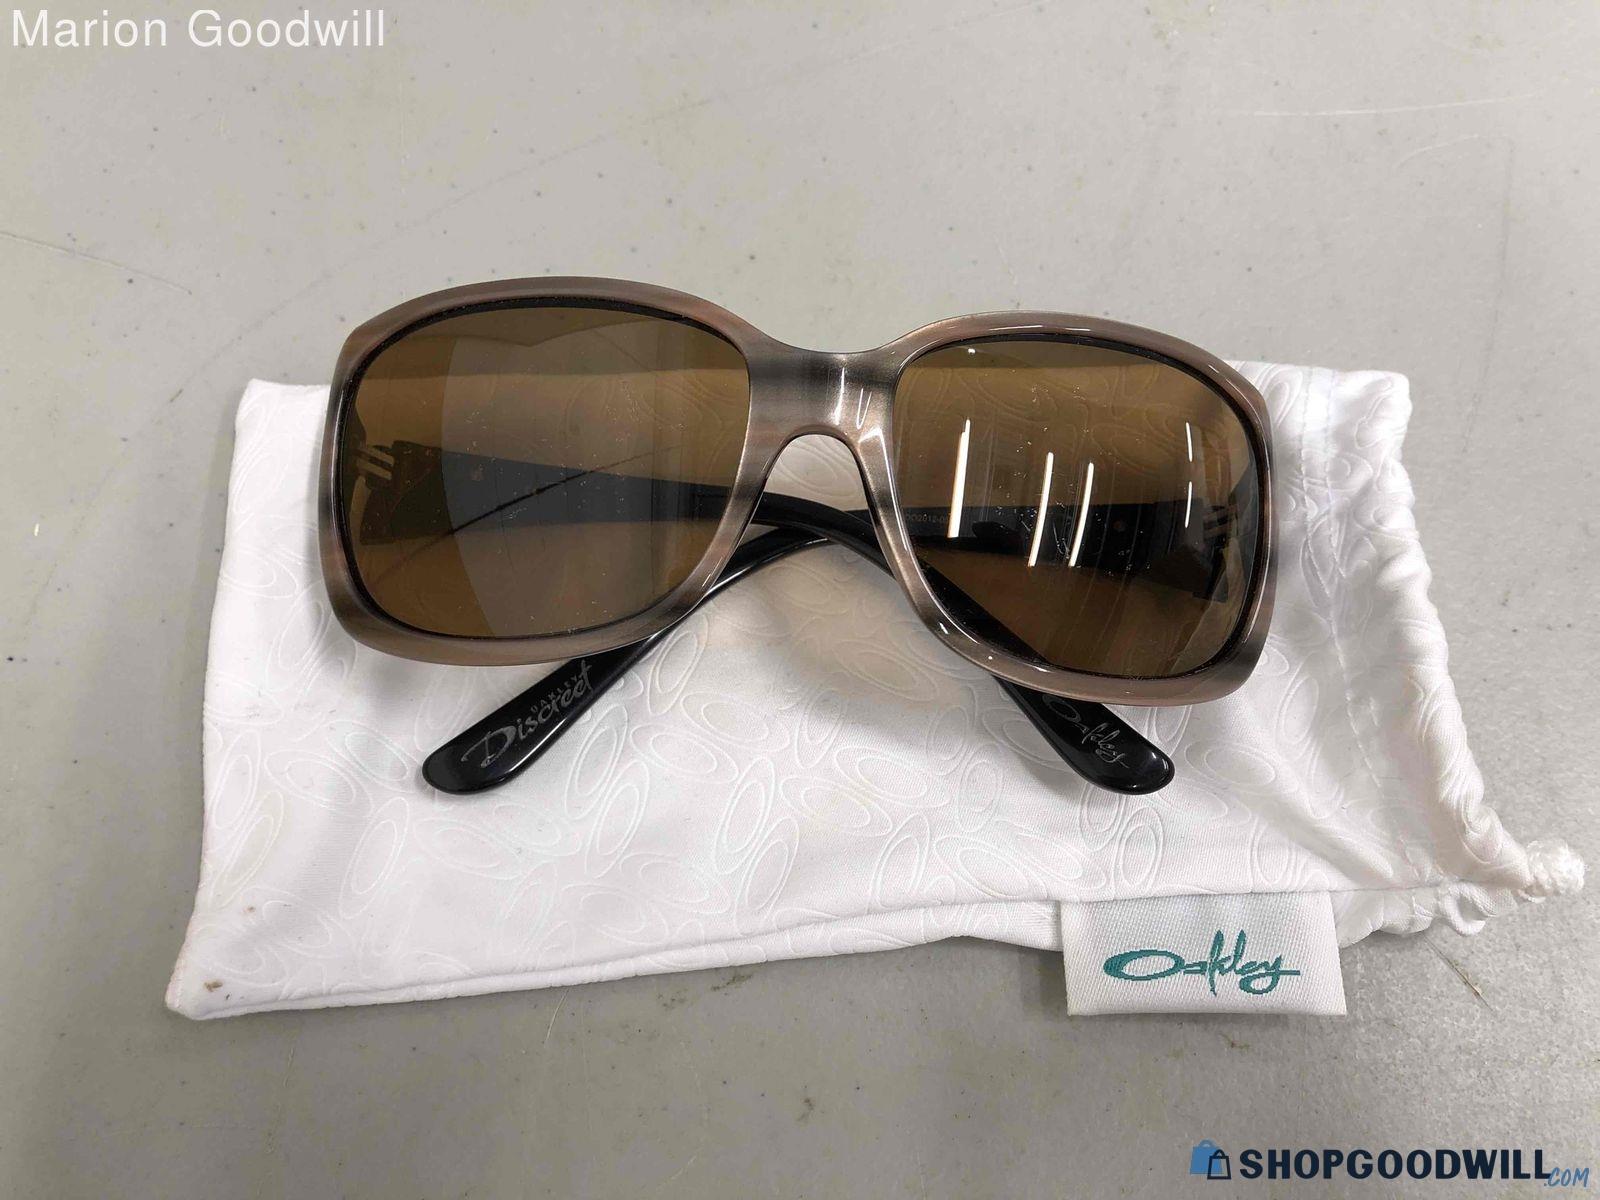 Oakley Discreet Women's Striped Sunglasses - shopgoodwill.com